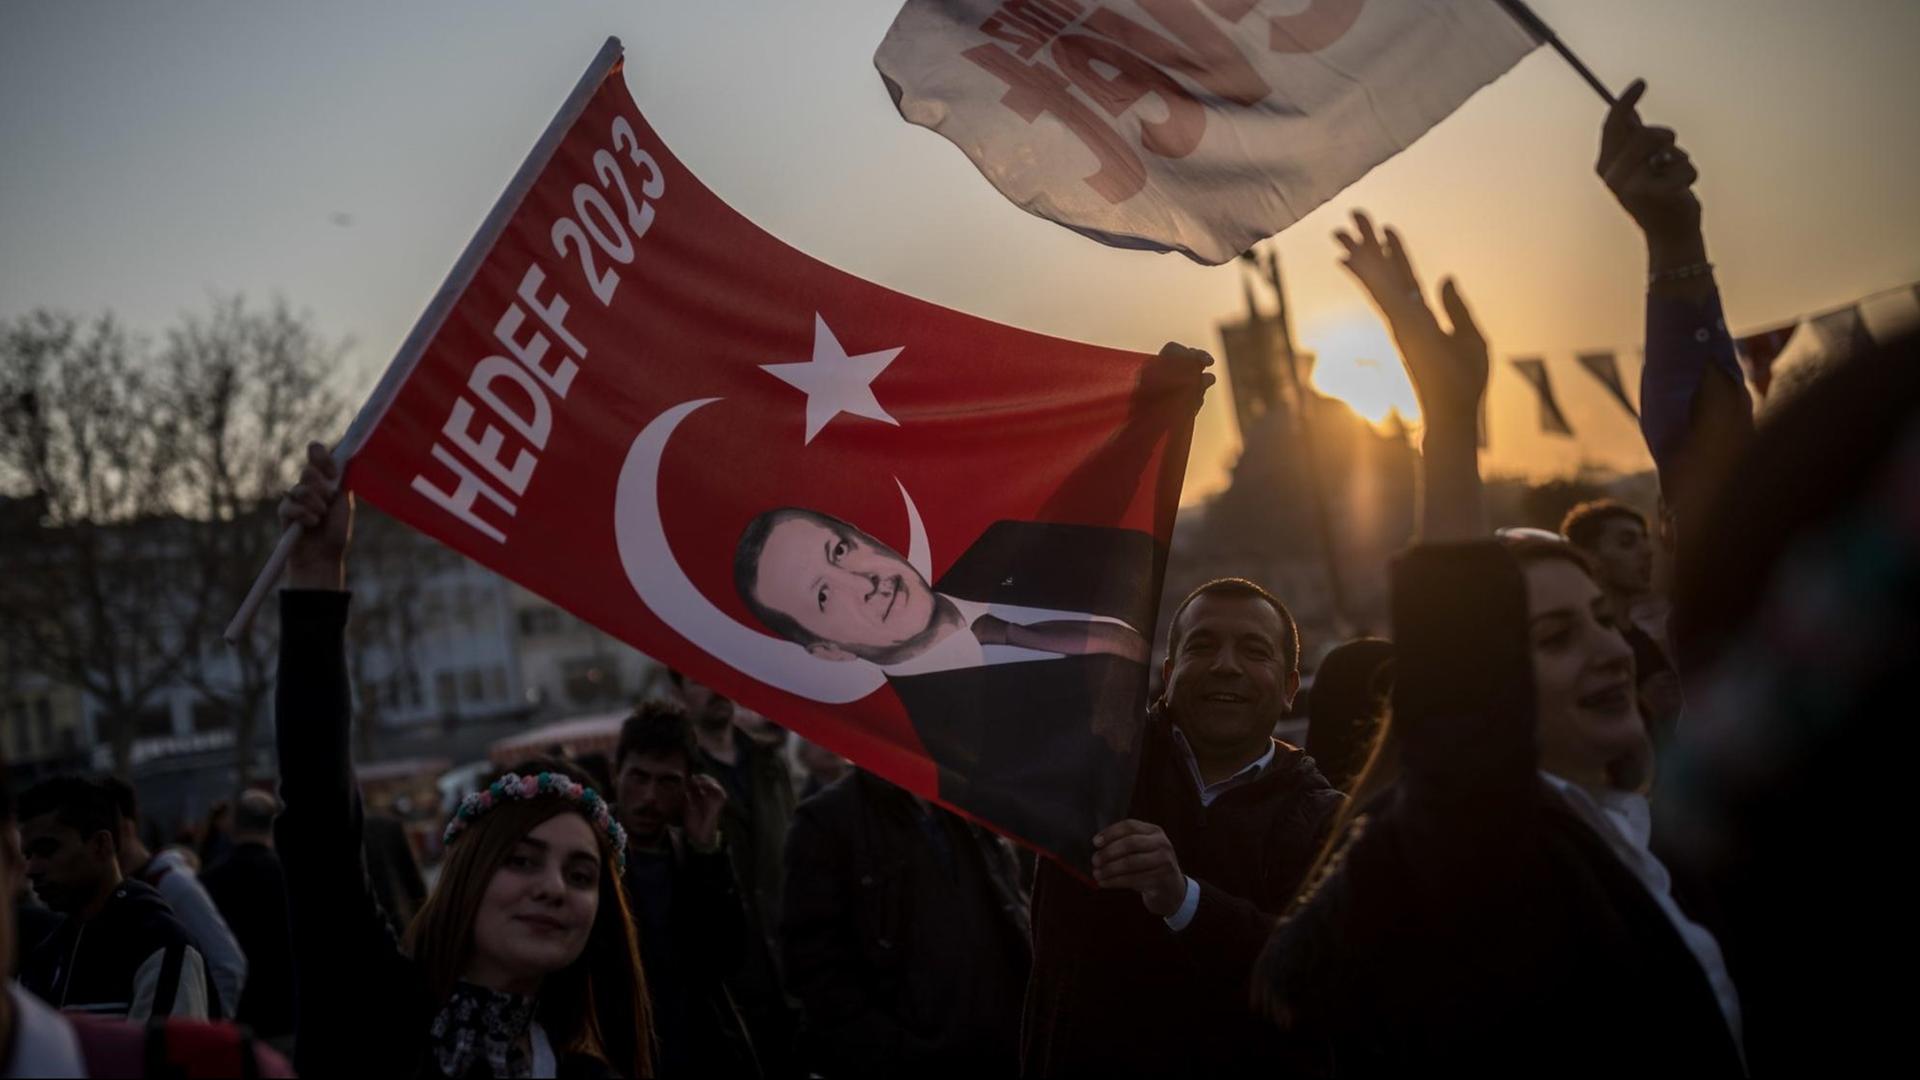 Anhänger der "Evet"-Bewegung für ein "Ja" beim anstehenden Referendum tanzen am 14.04.2017 in Istanbul (Türkei) bei einer Wahlveranstaltung.